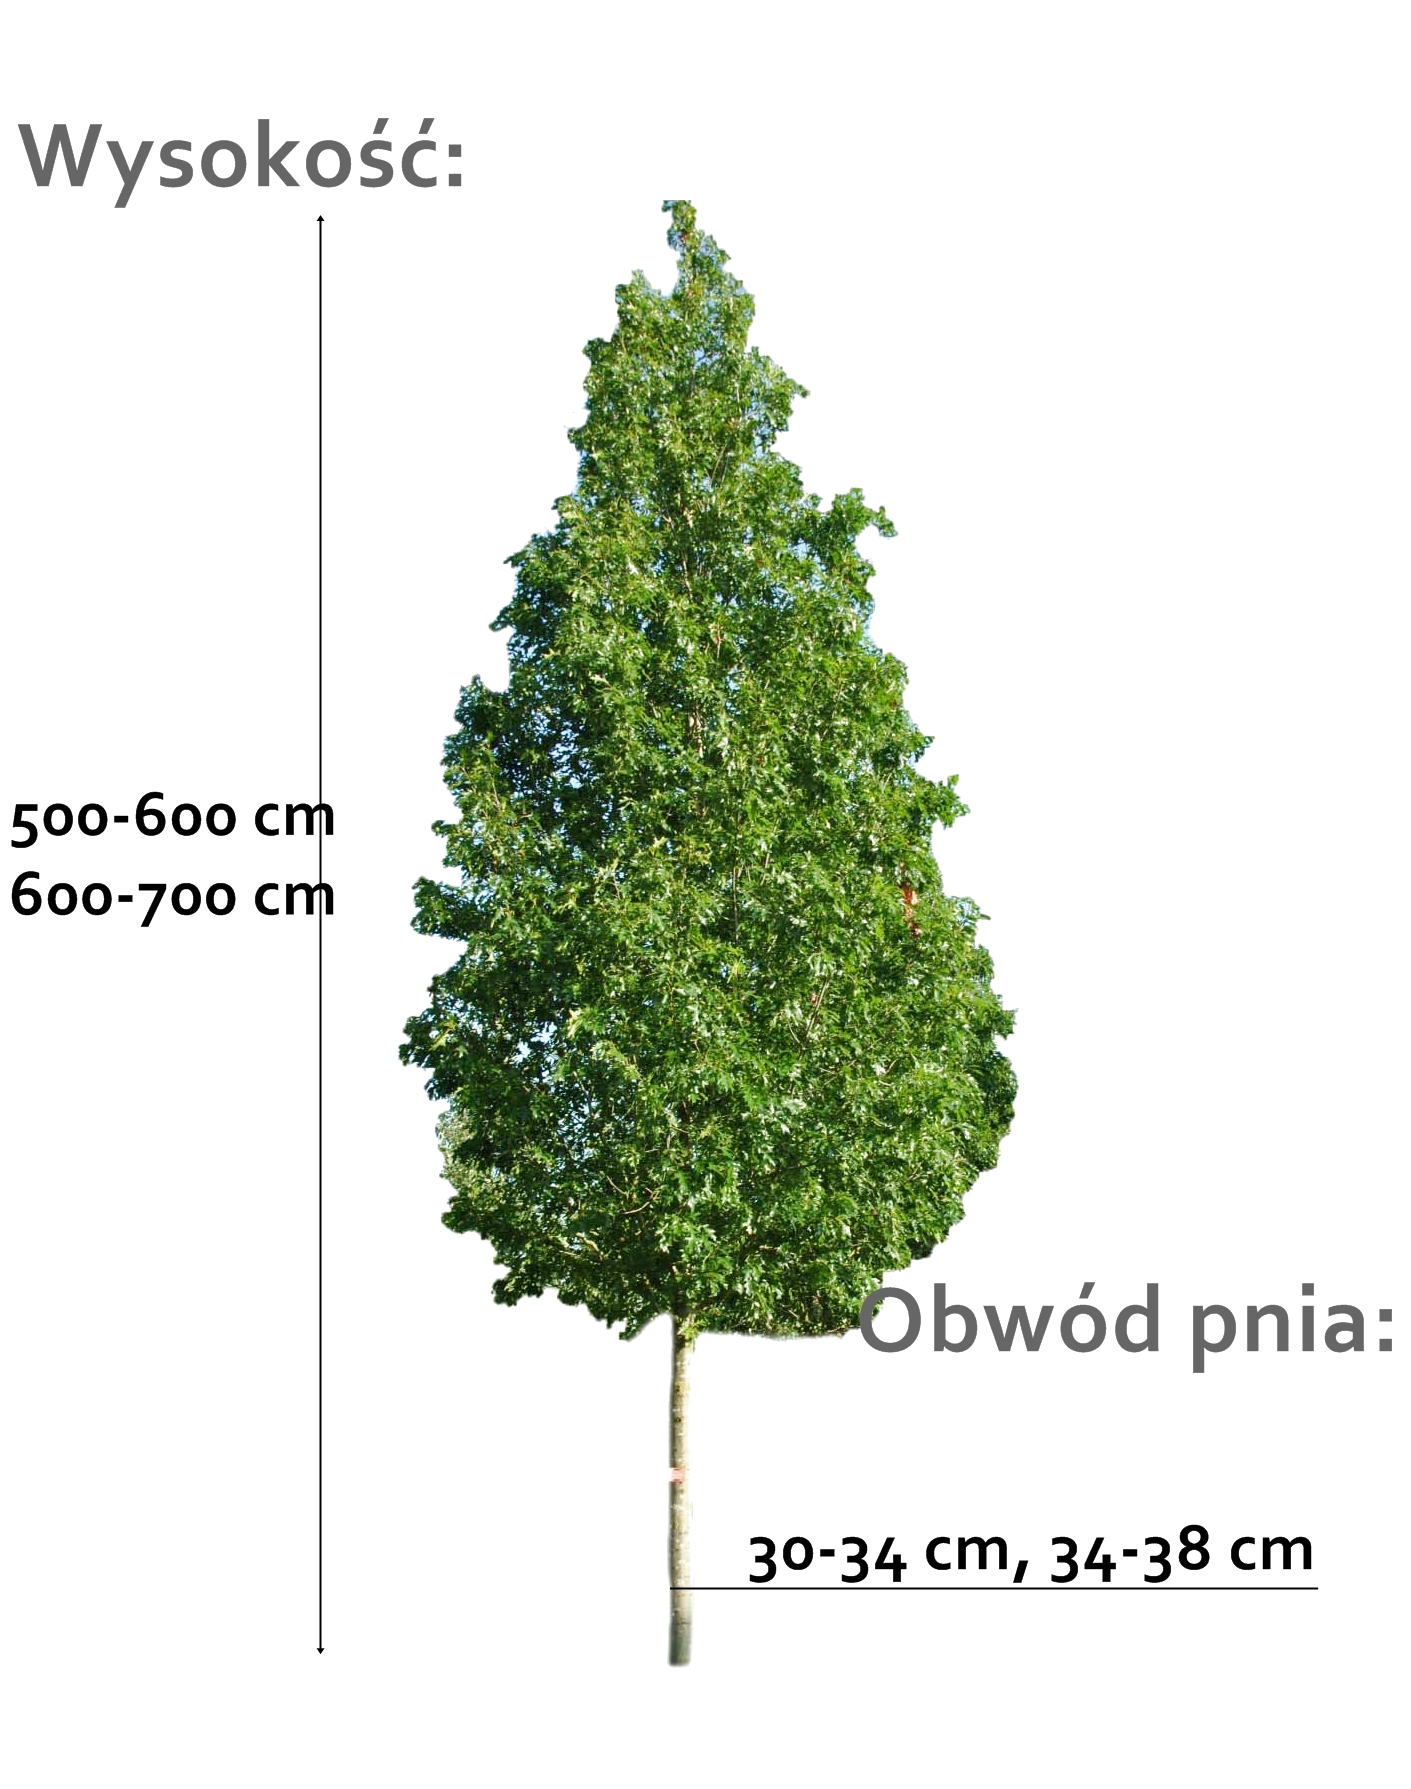 dab blotny - duze drzewo o roznych obwodach pnia